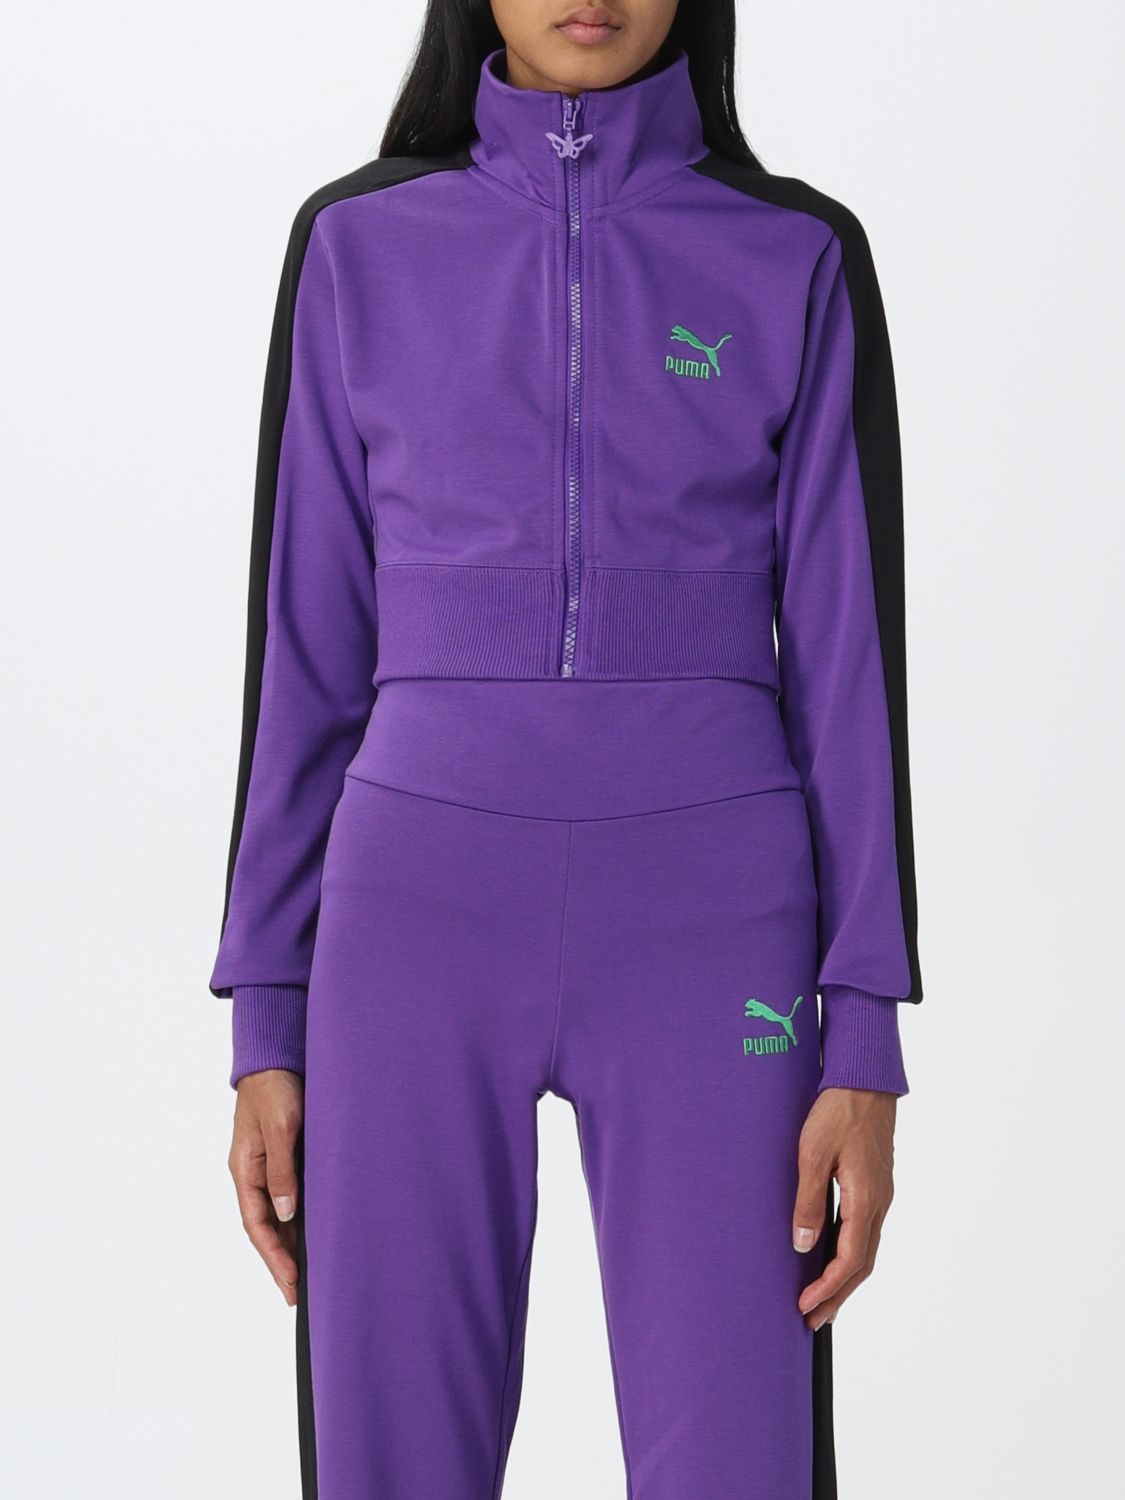 Femme Vêtements Articles de sport et dentraînement Sweats Sweat-shirt PUMA en coloris Violet 